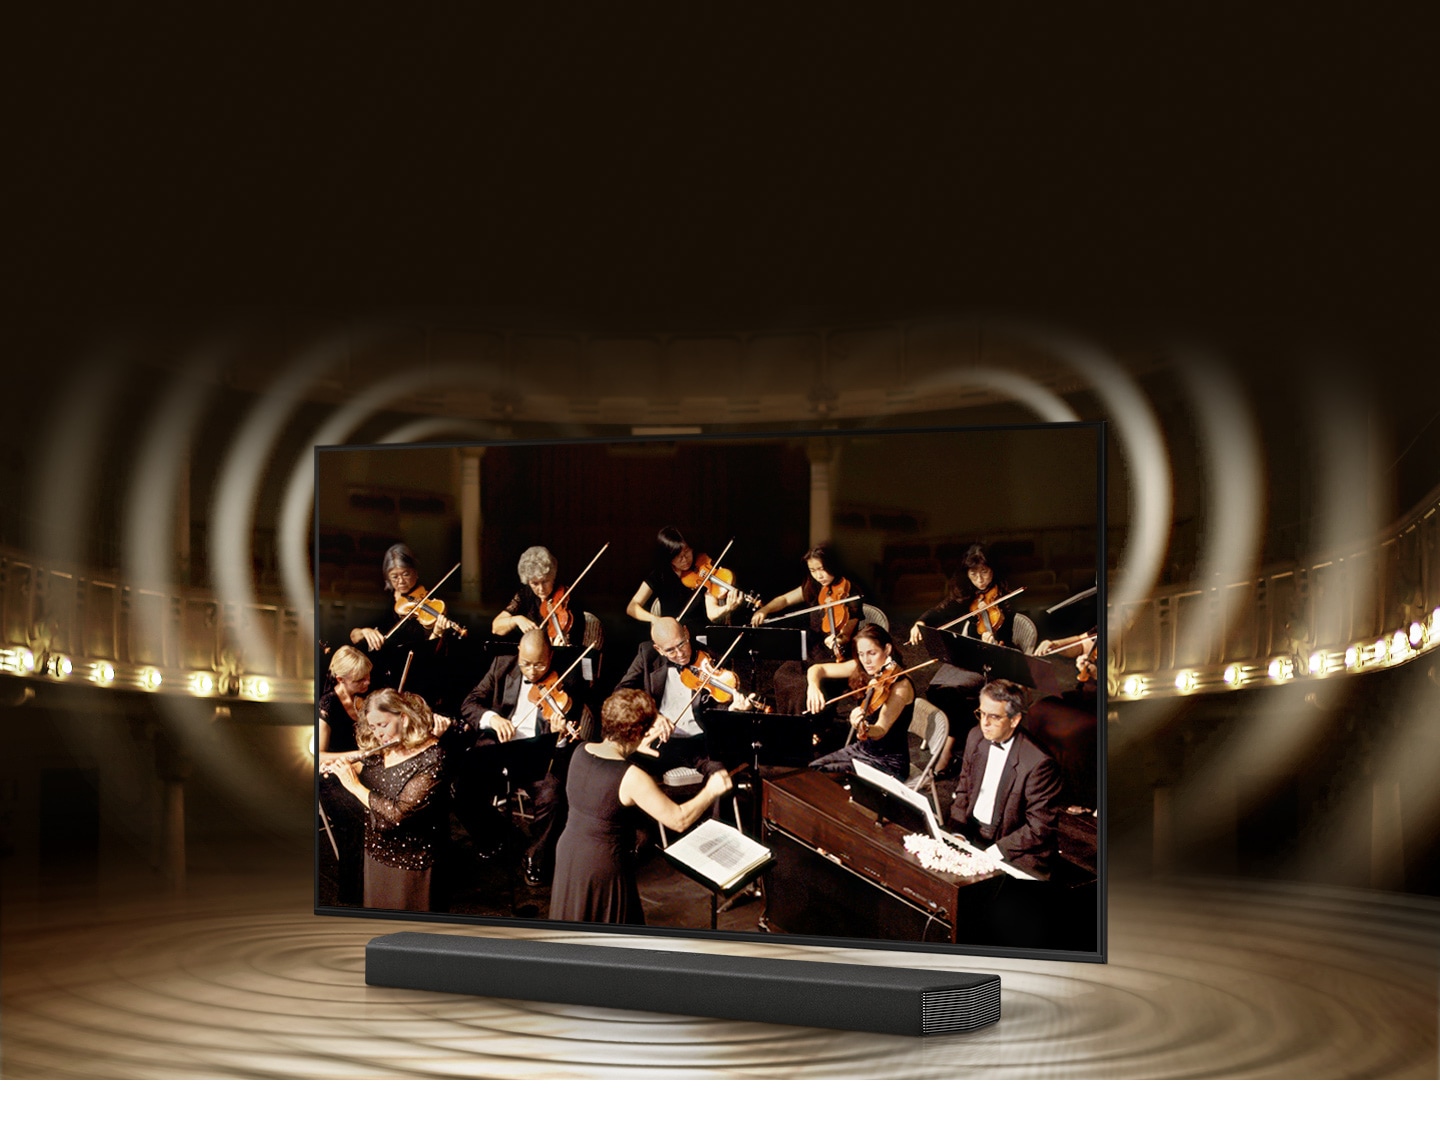 Los gráficos de ondas de sonido simulados de la TV Samsung y la barra de sonido señalan la tecnología Q Symphony mientras reproducen sonido juntos.